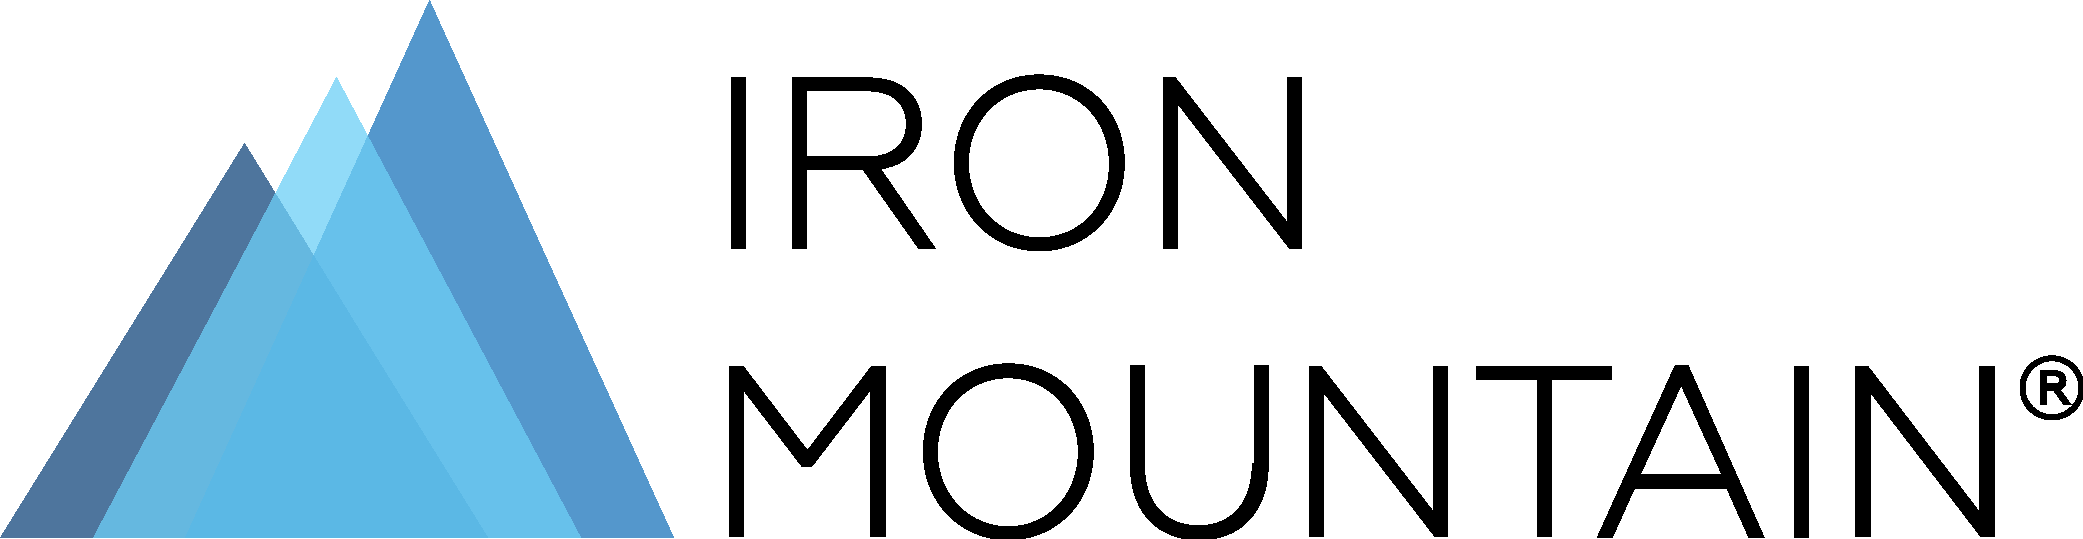 Iron Mountain Logo Vector